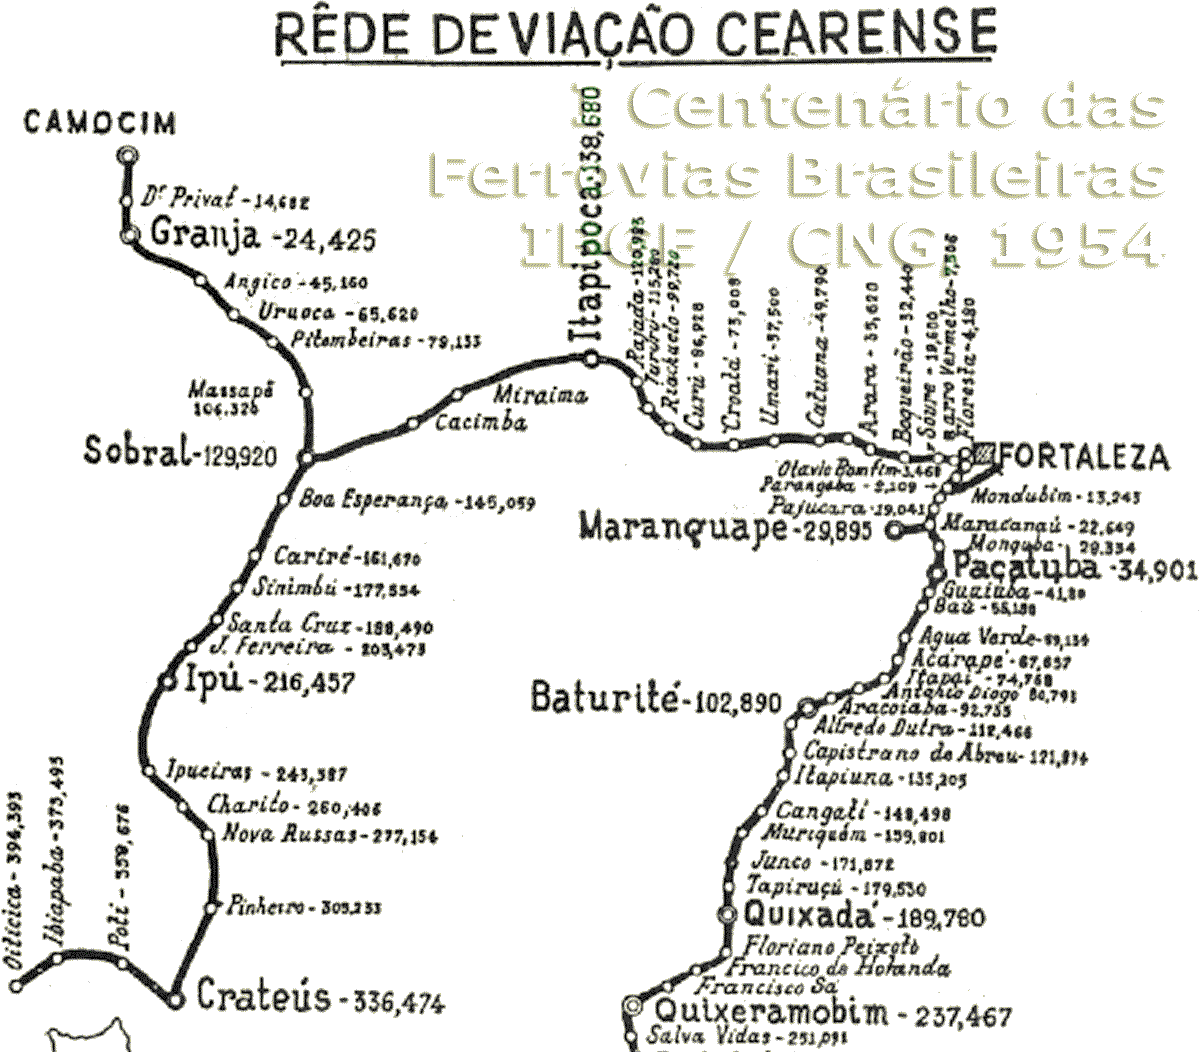 Mapa ferroviário da Rede de Viação Cearense em 1954 -  trilhos do norte da rede